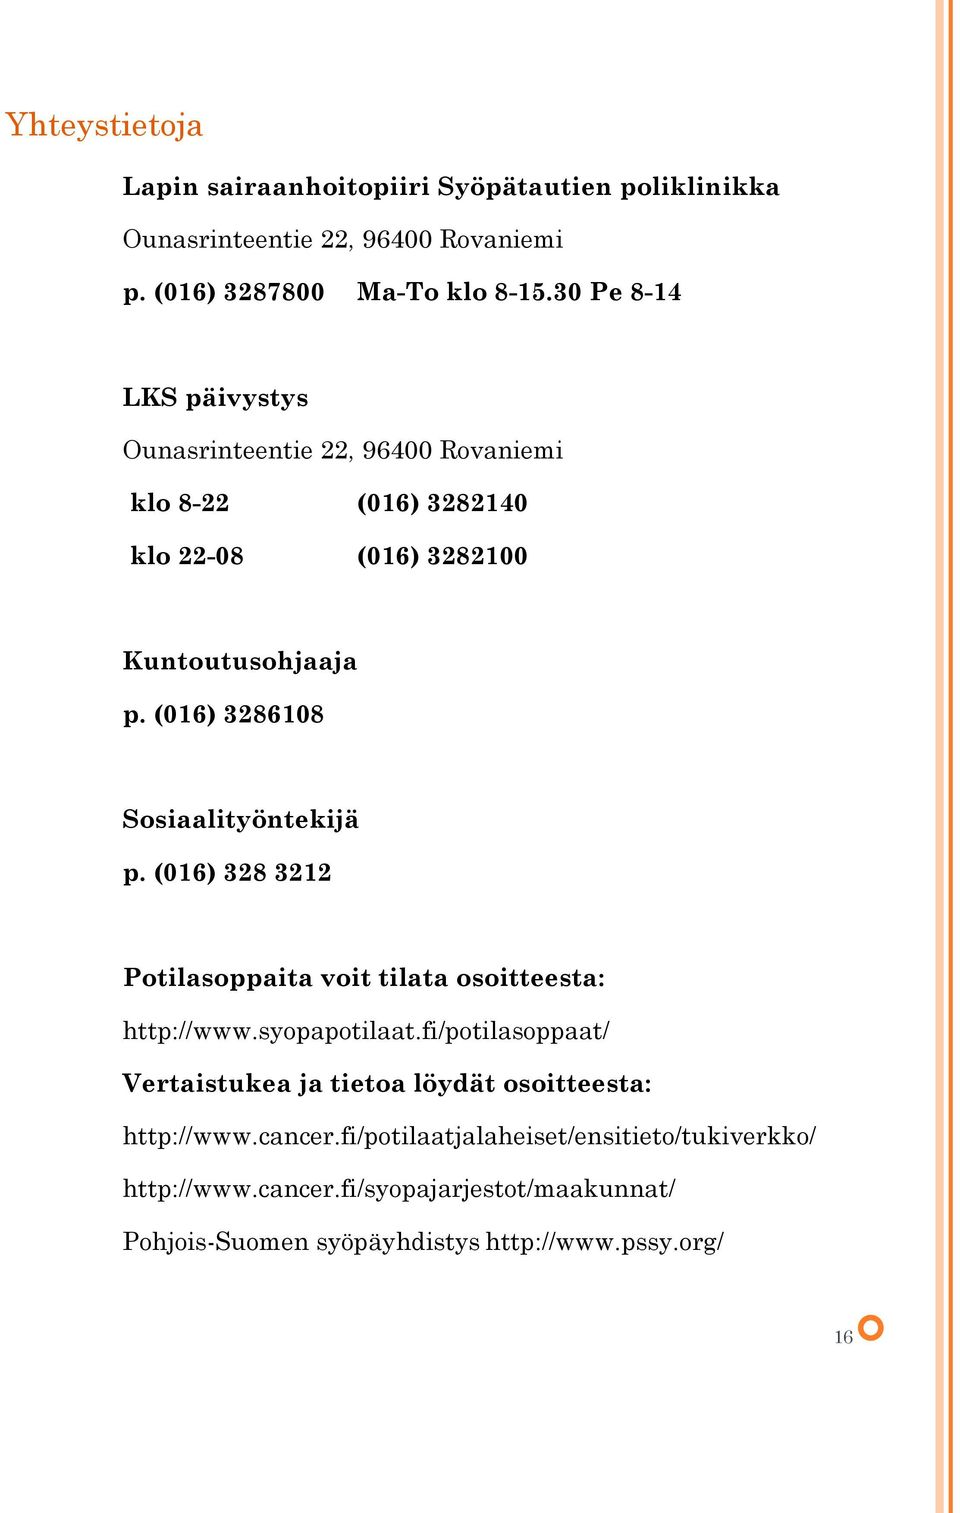 (016) 3286108 Sosiaalityöntekijä p. (016) 328 3212 Potilasoppaita voit tilata osoitteesta: http://www.syopapotilaat.